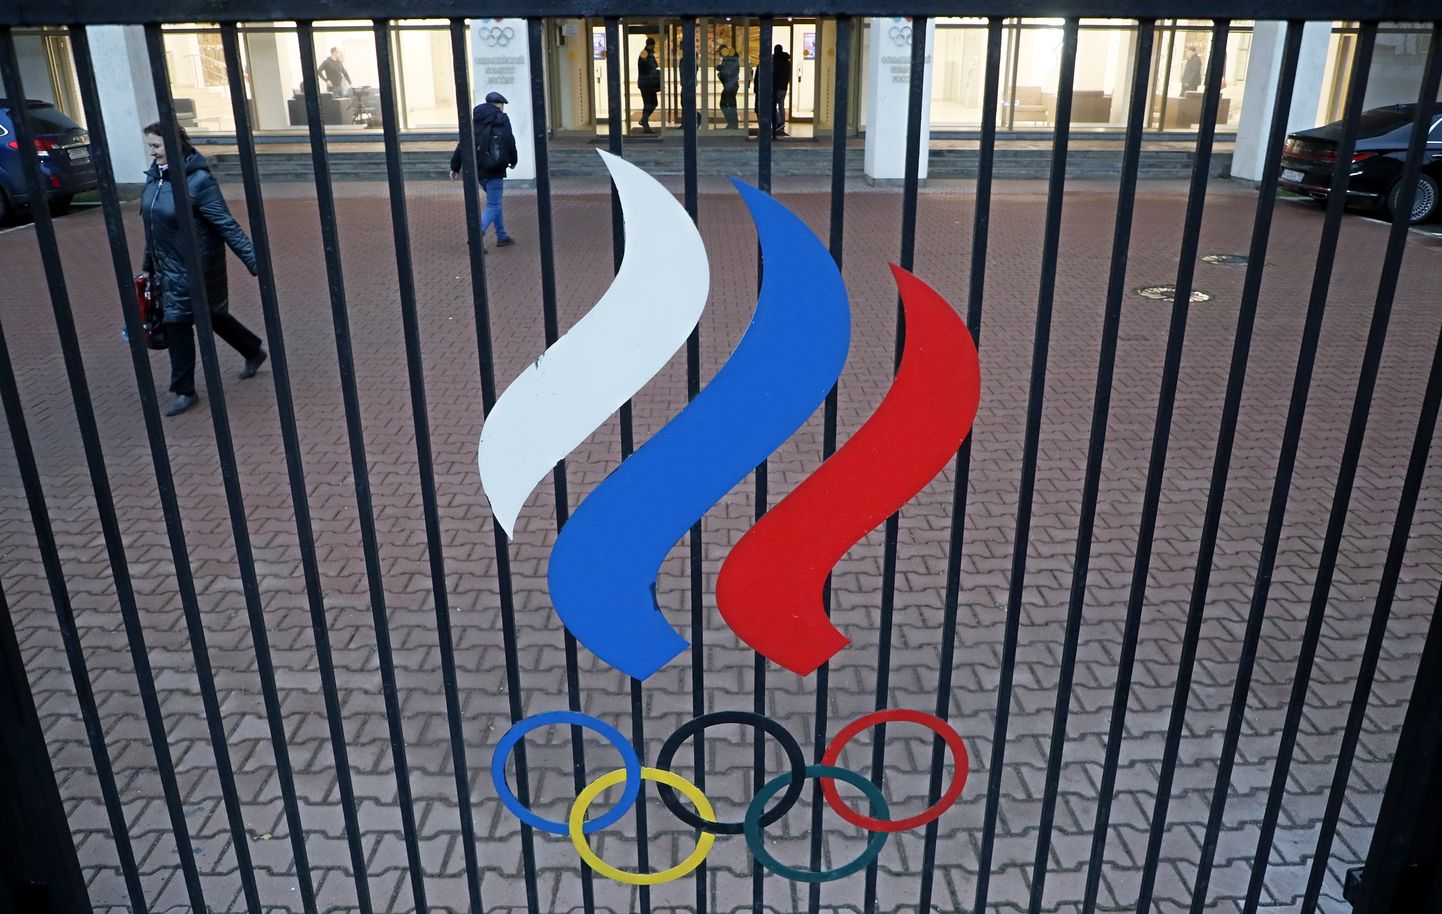 Venemaa sportlastel lubati olümpiamängudel osaleda.